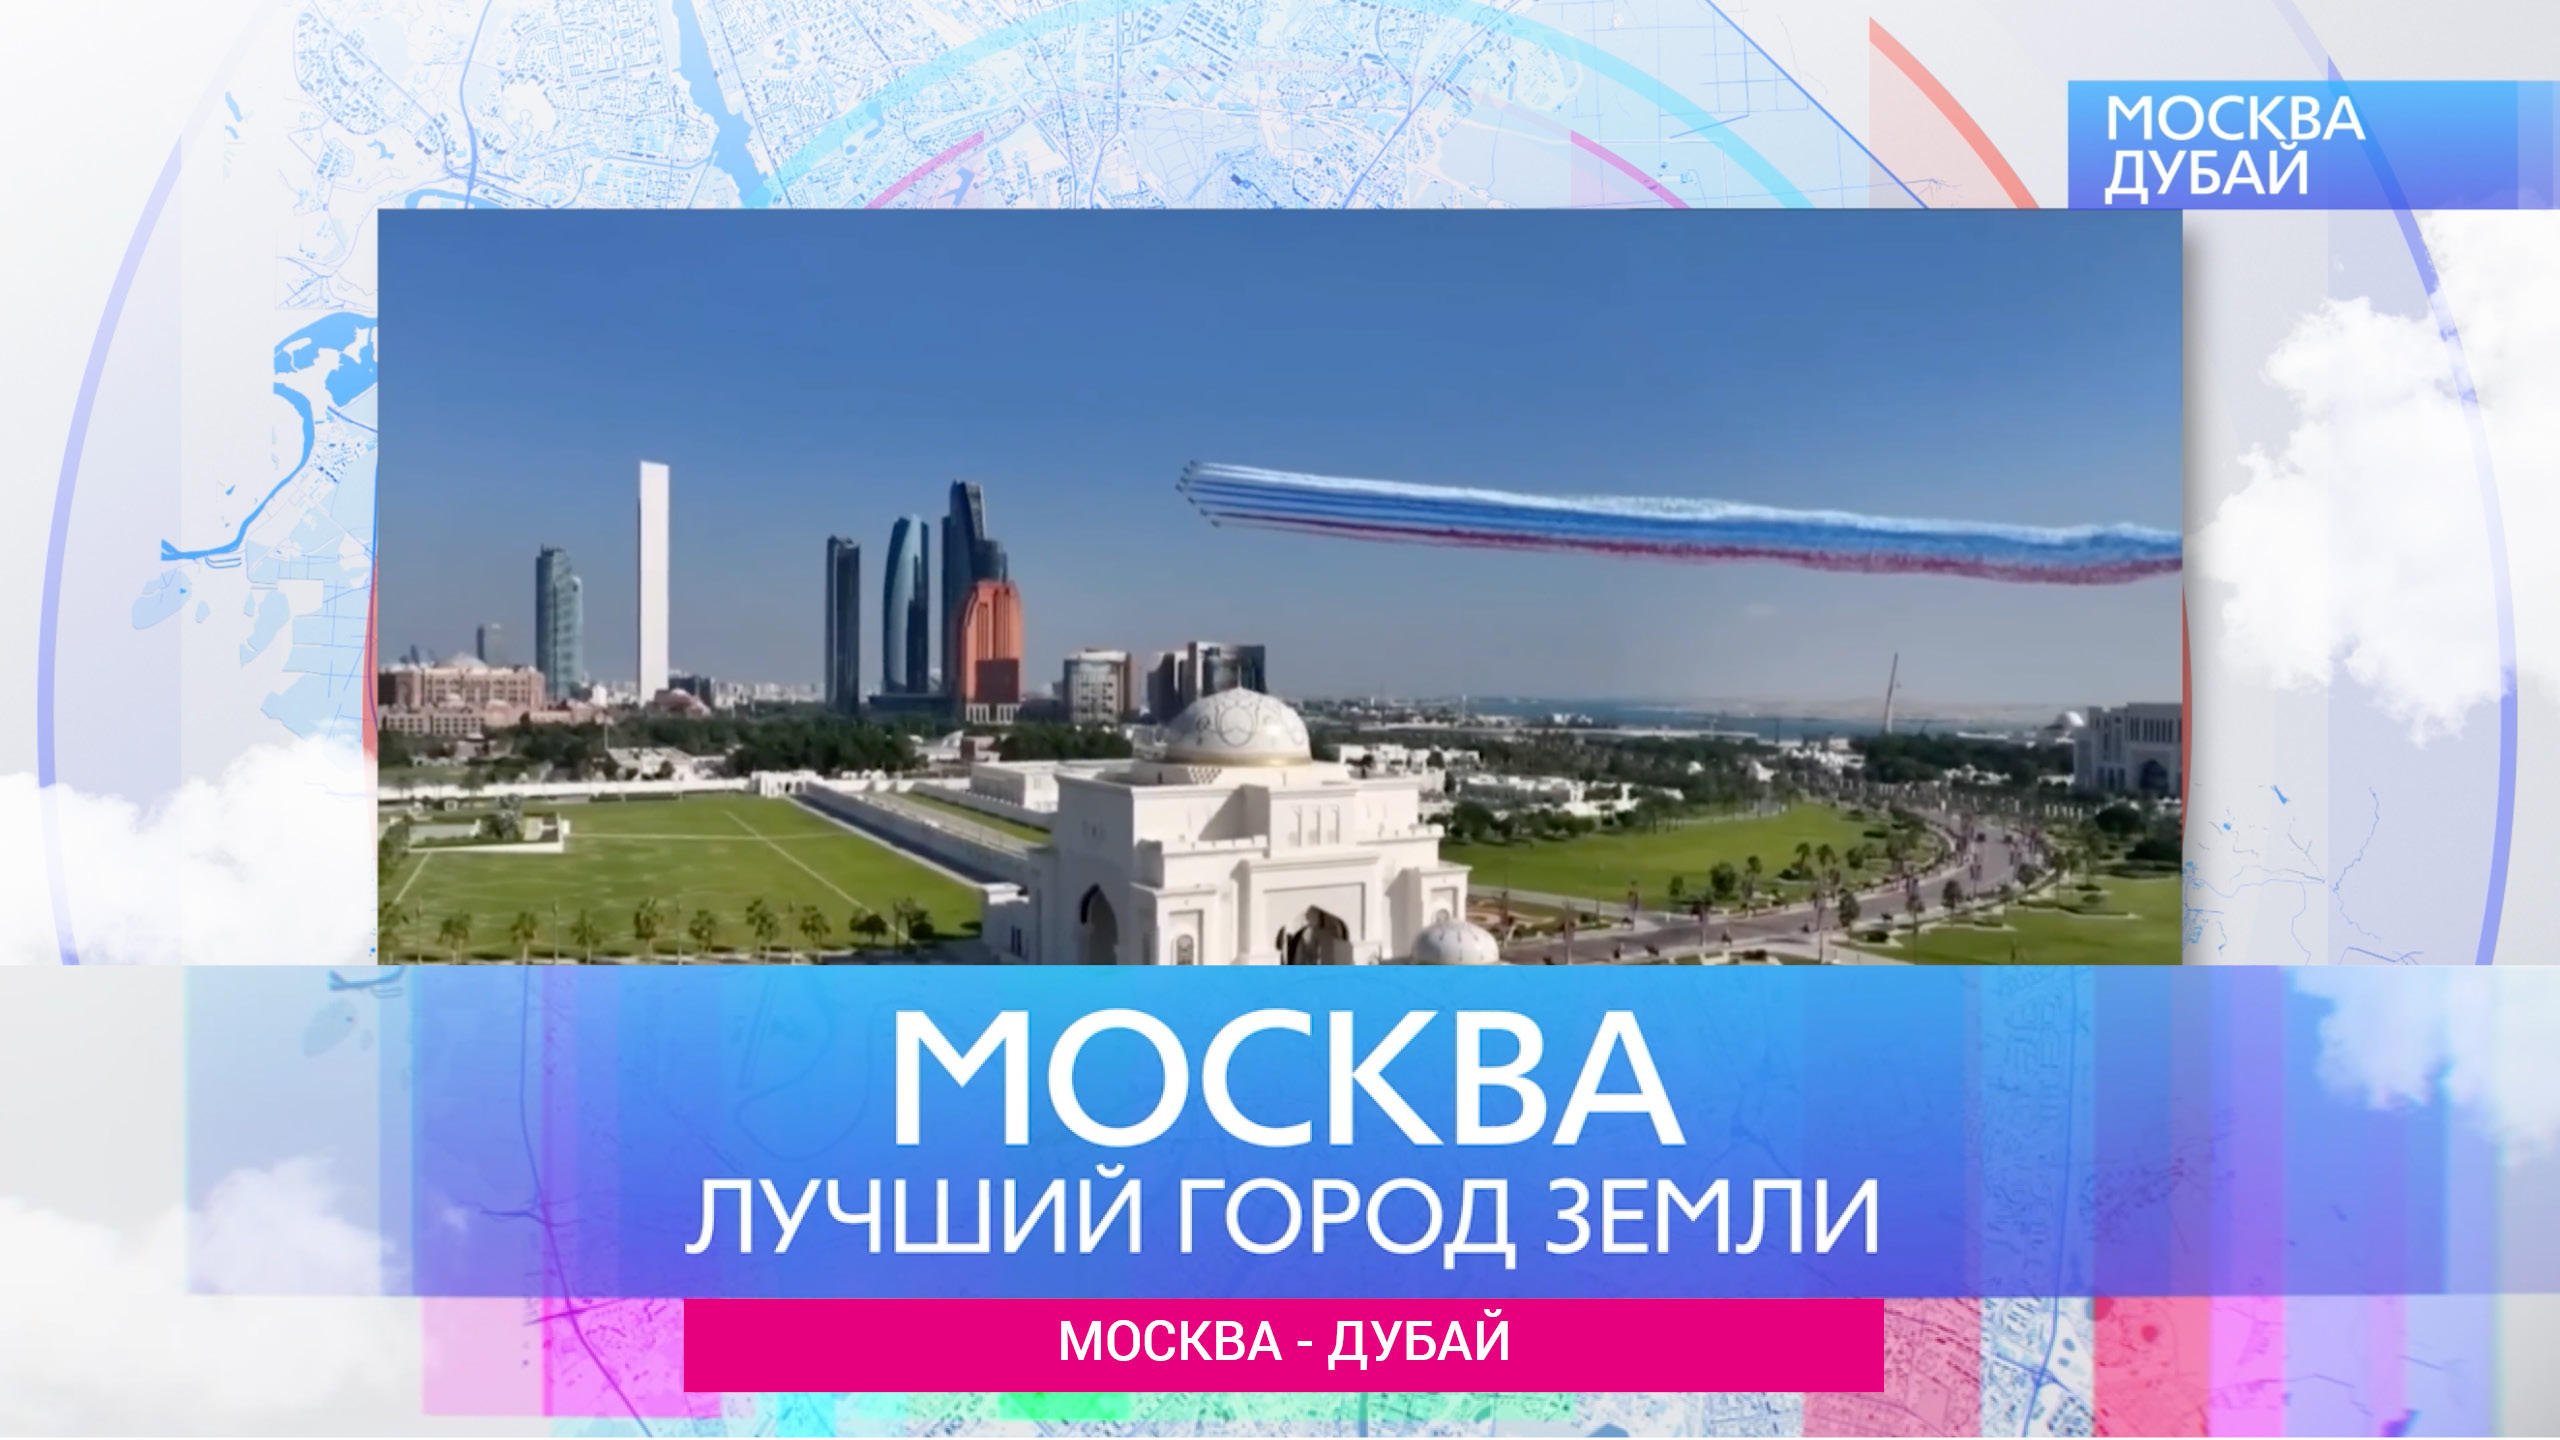 Москва-Лучший город земли - Москва и Дубай